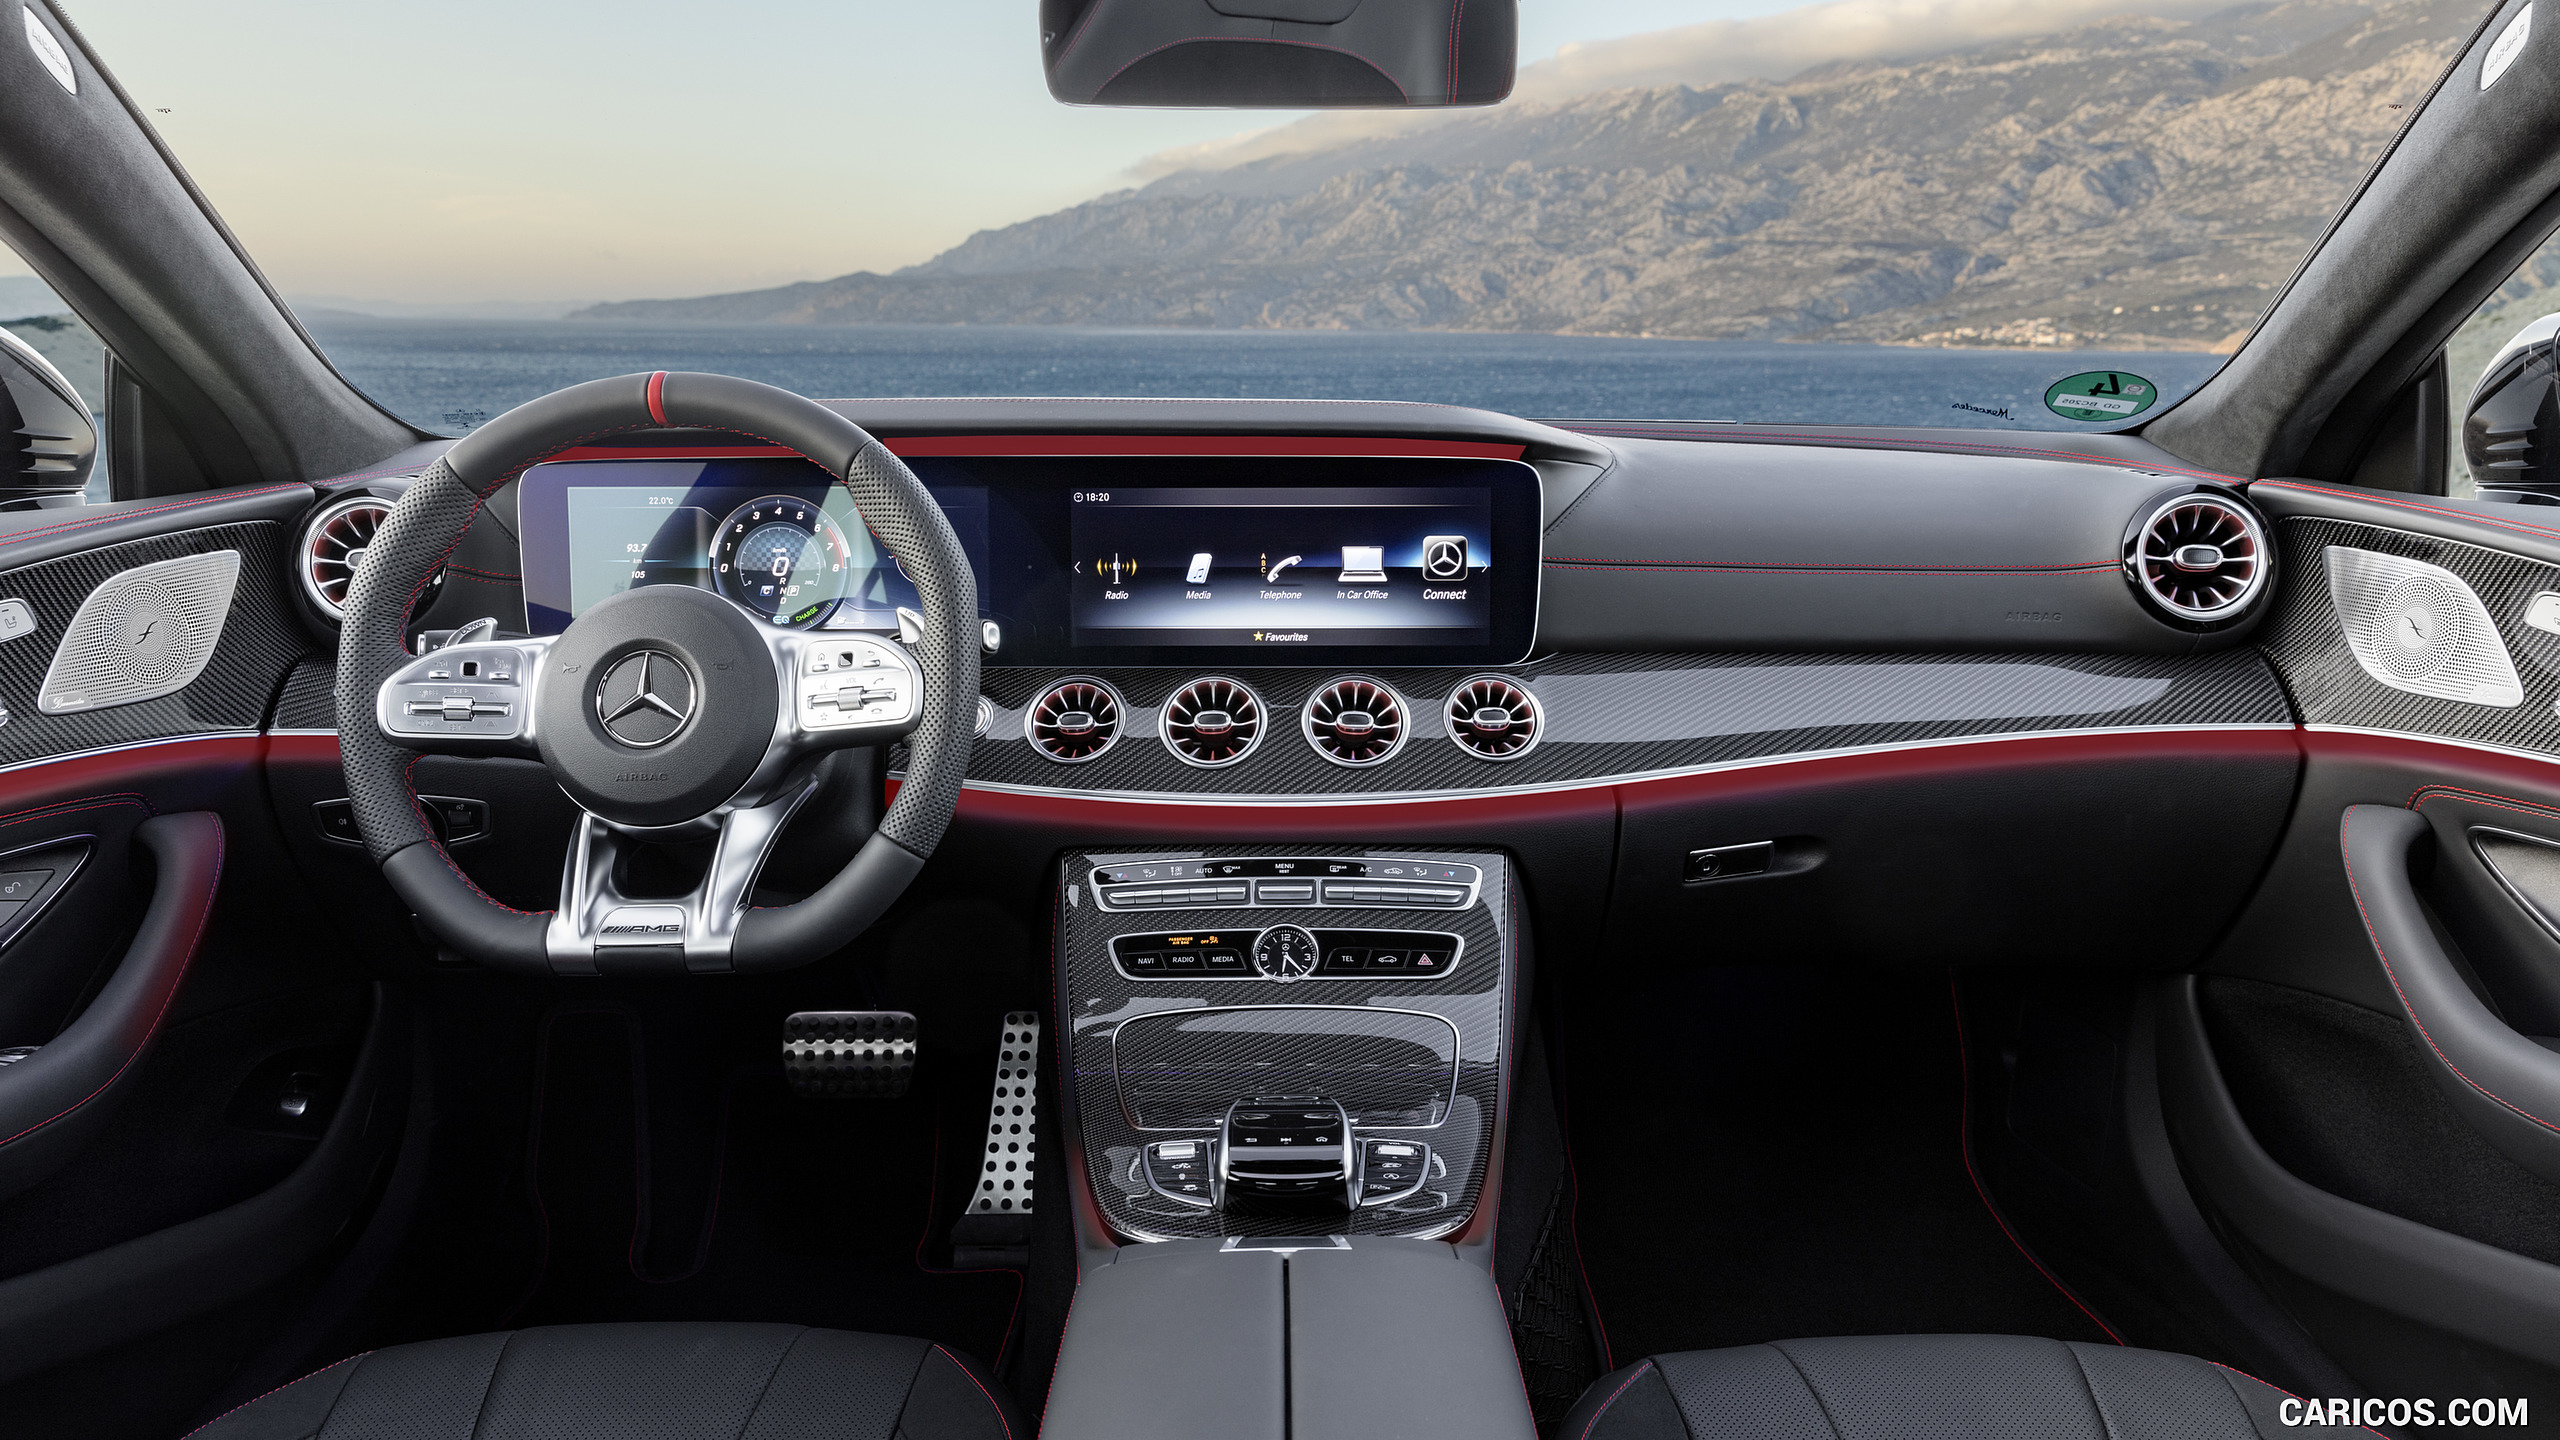 2019 Mercedes Amg Cls 53 4matic Interior Cockpit Hd